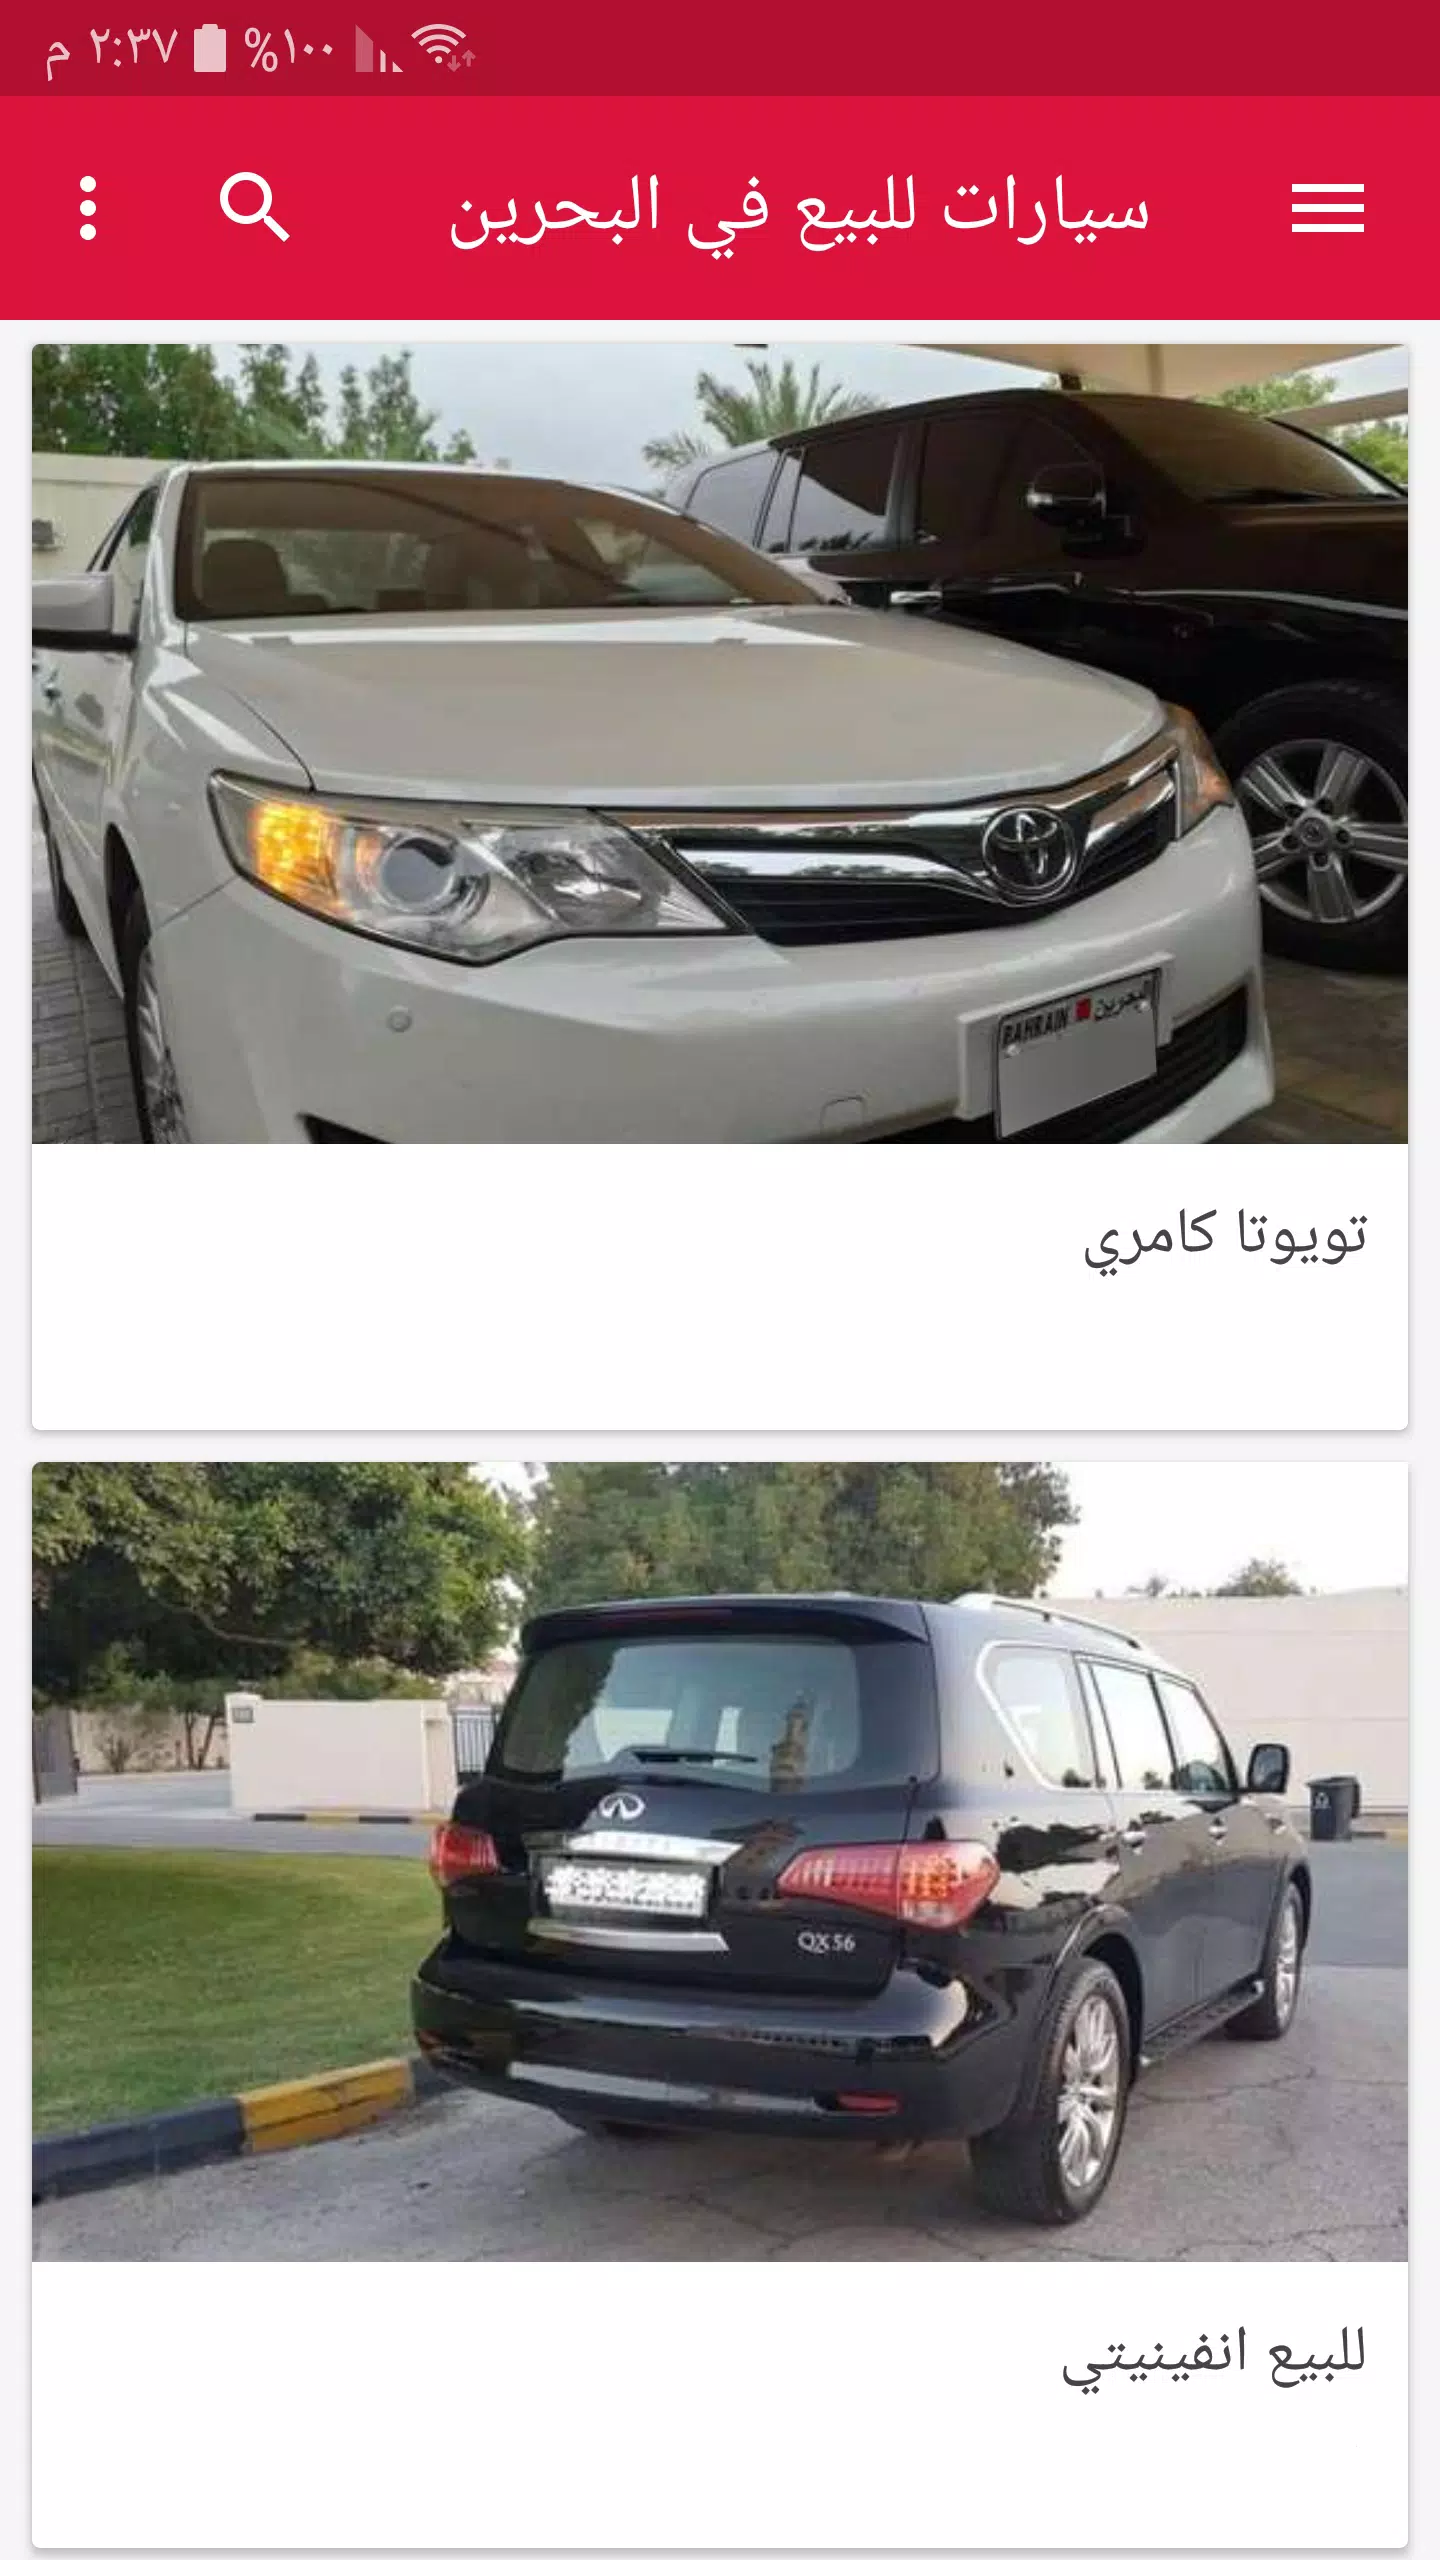 سيارات للبيع في البحرين APK للاندرويد تنزيل